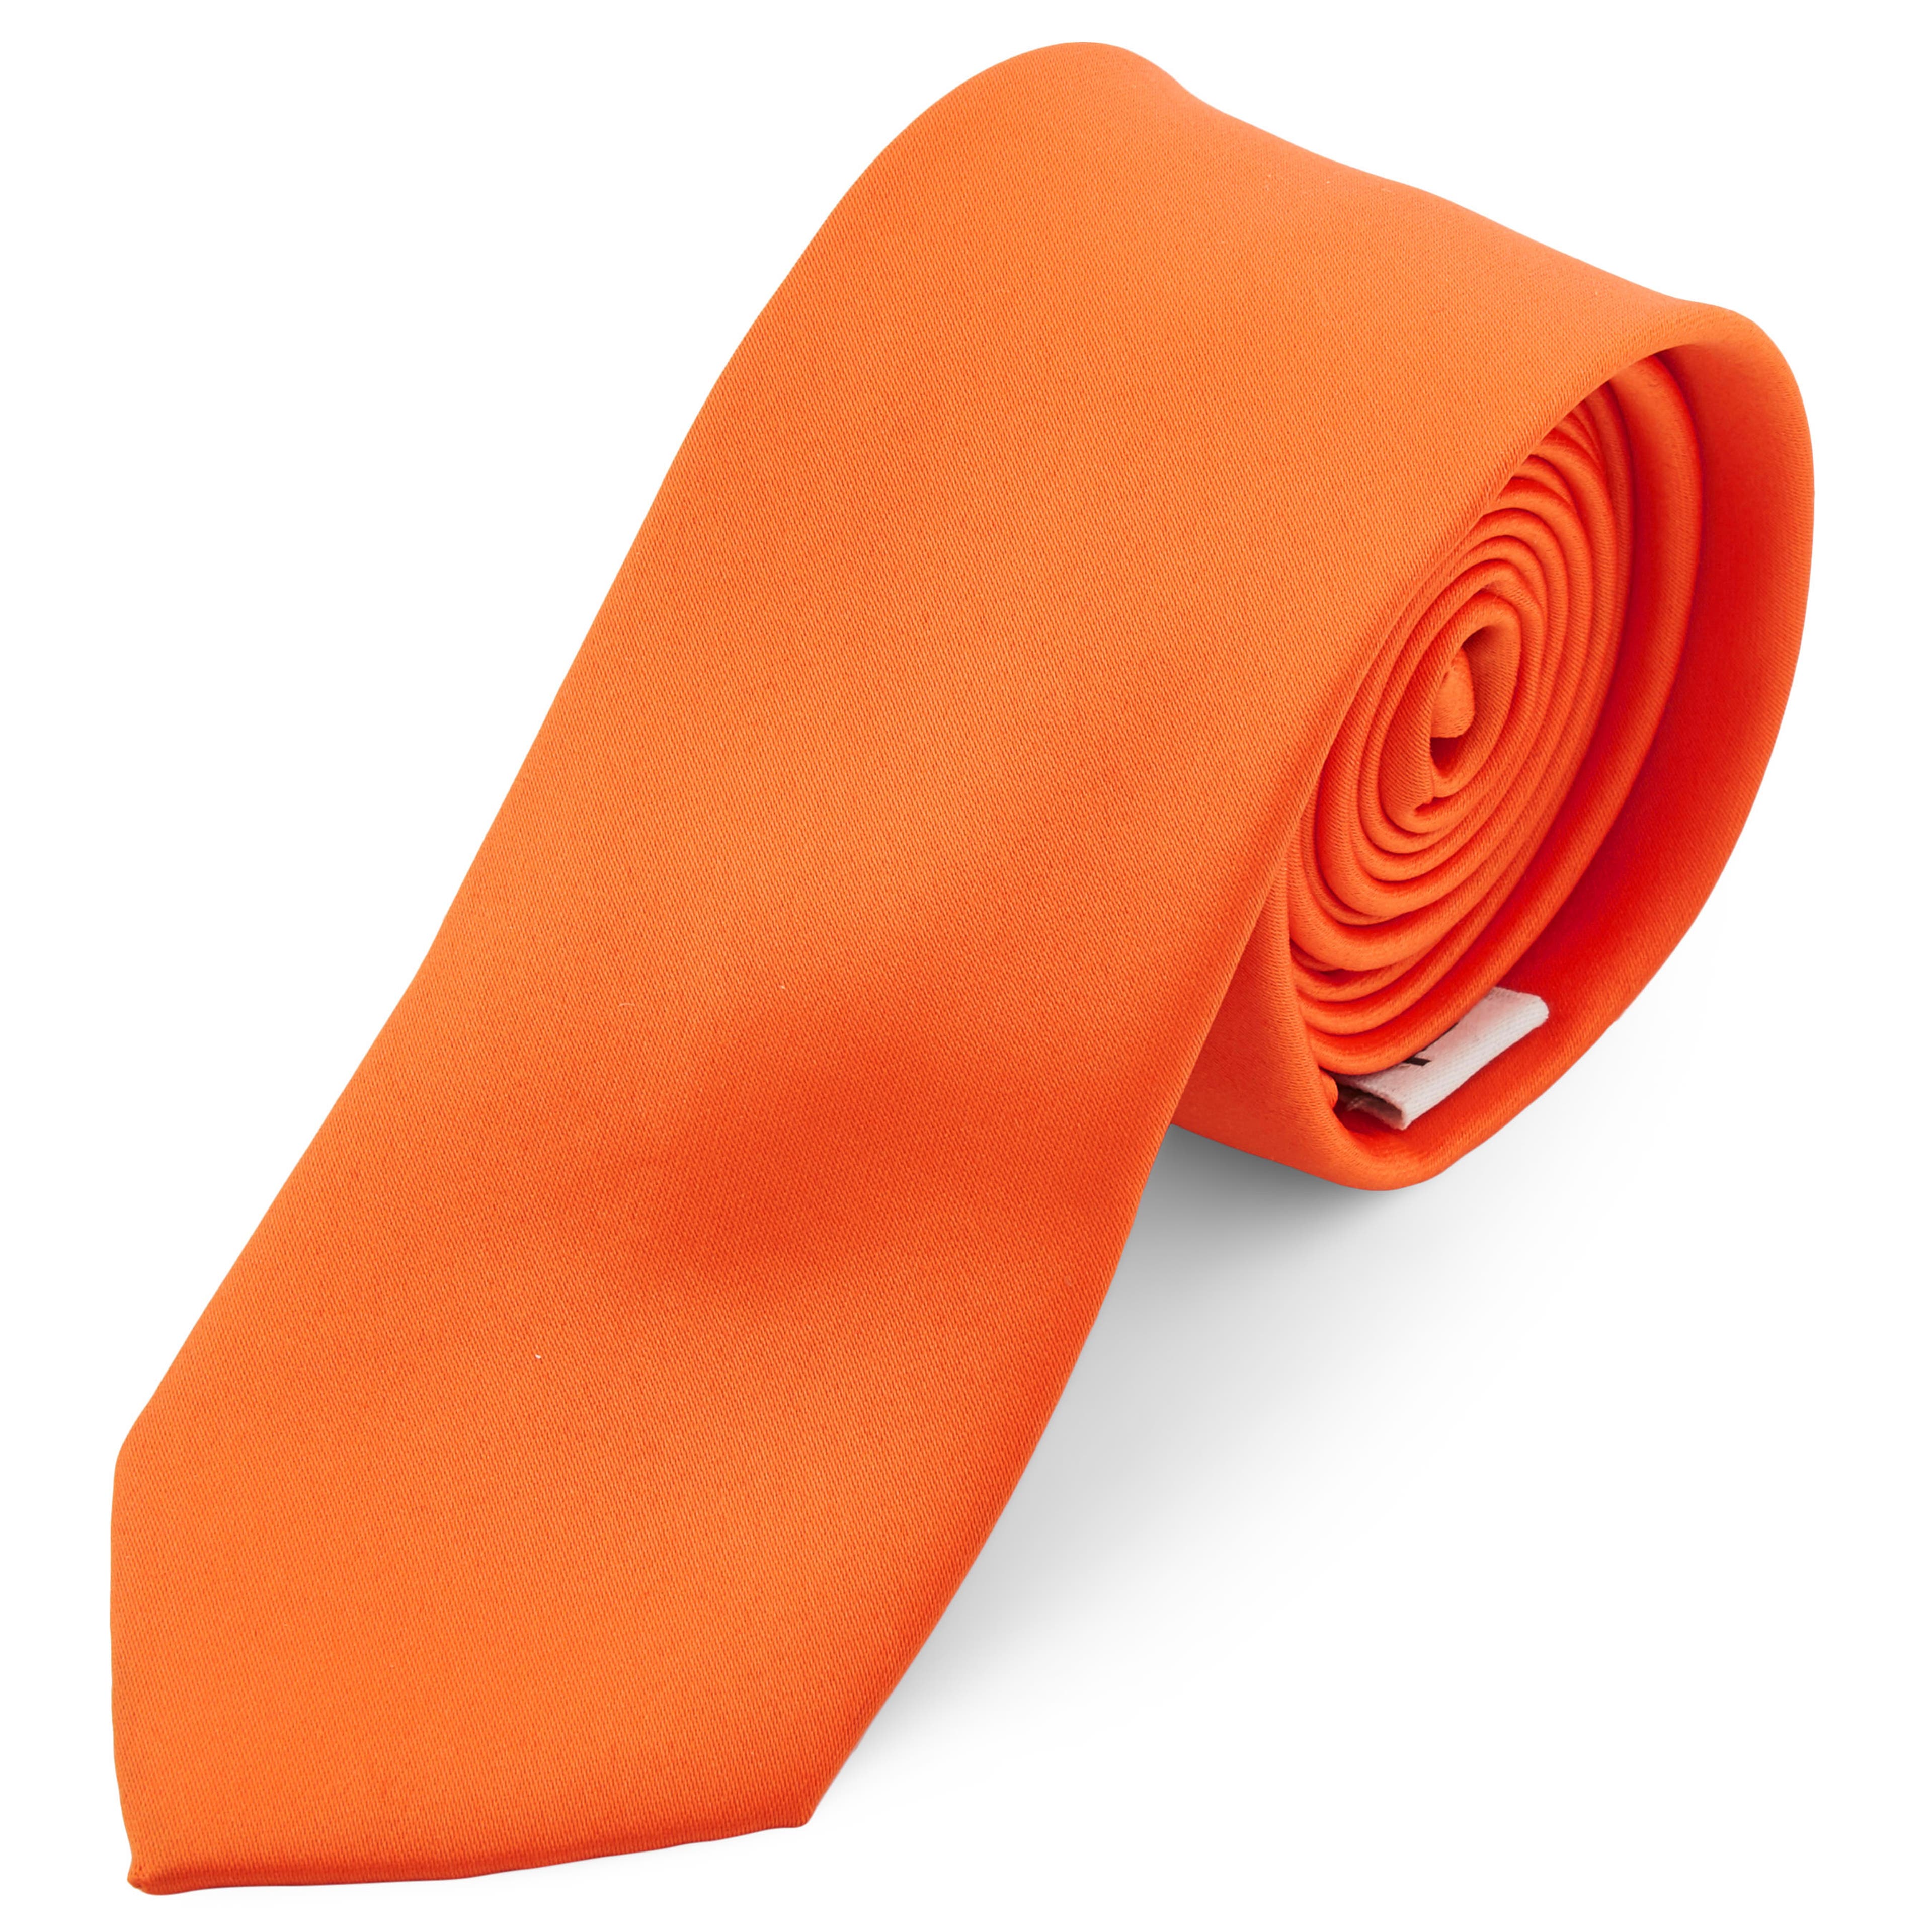 Βασική Κρίμσον Πορτοκαλί Γραβάτα 6cm